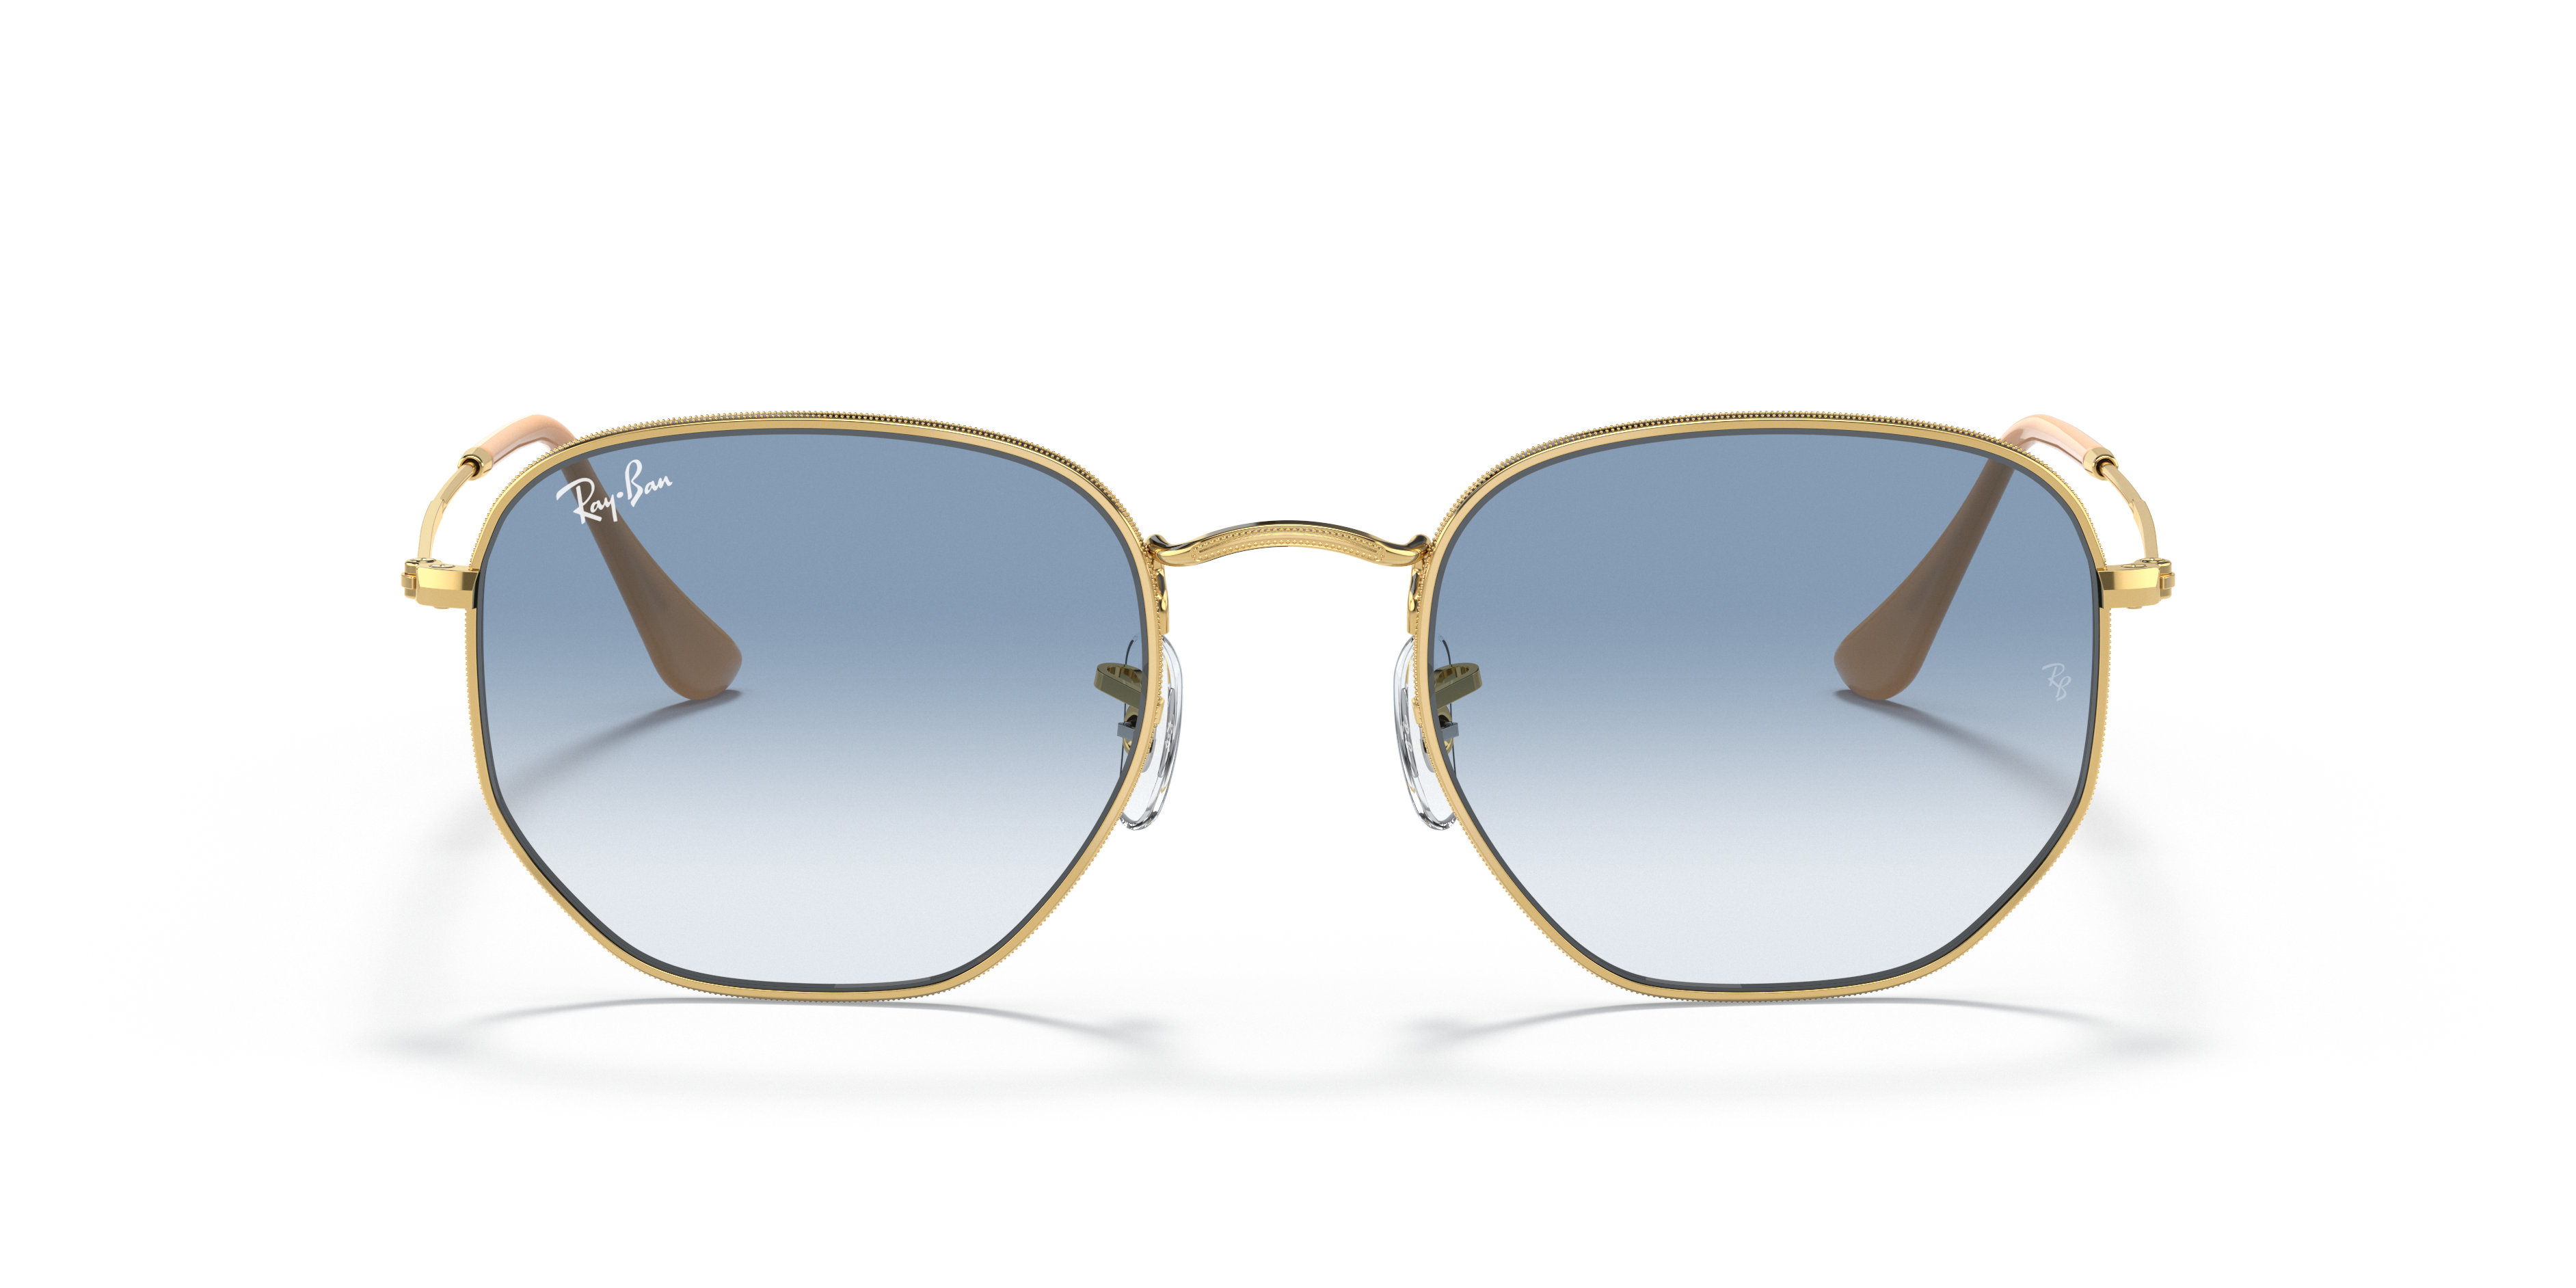 Ray-Ban Occhiali da Sole Esagonali RB3548 Gold Color Frame & Flash Light Blue Lens Accessori Ottica e occhiali da sole Occhiali da sole 